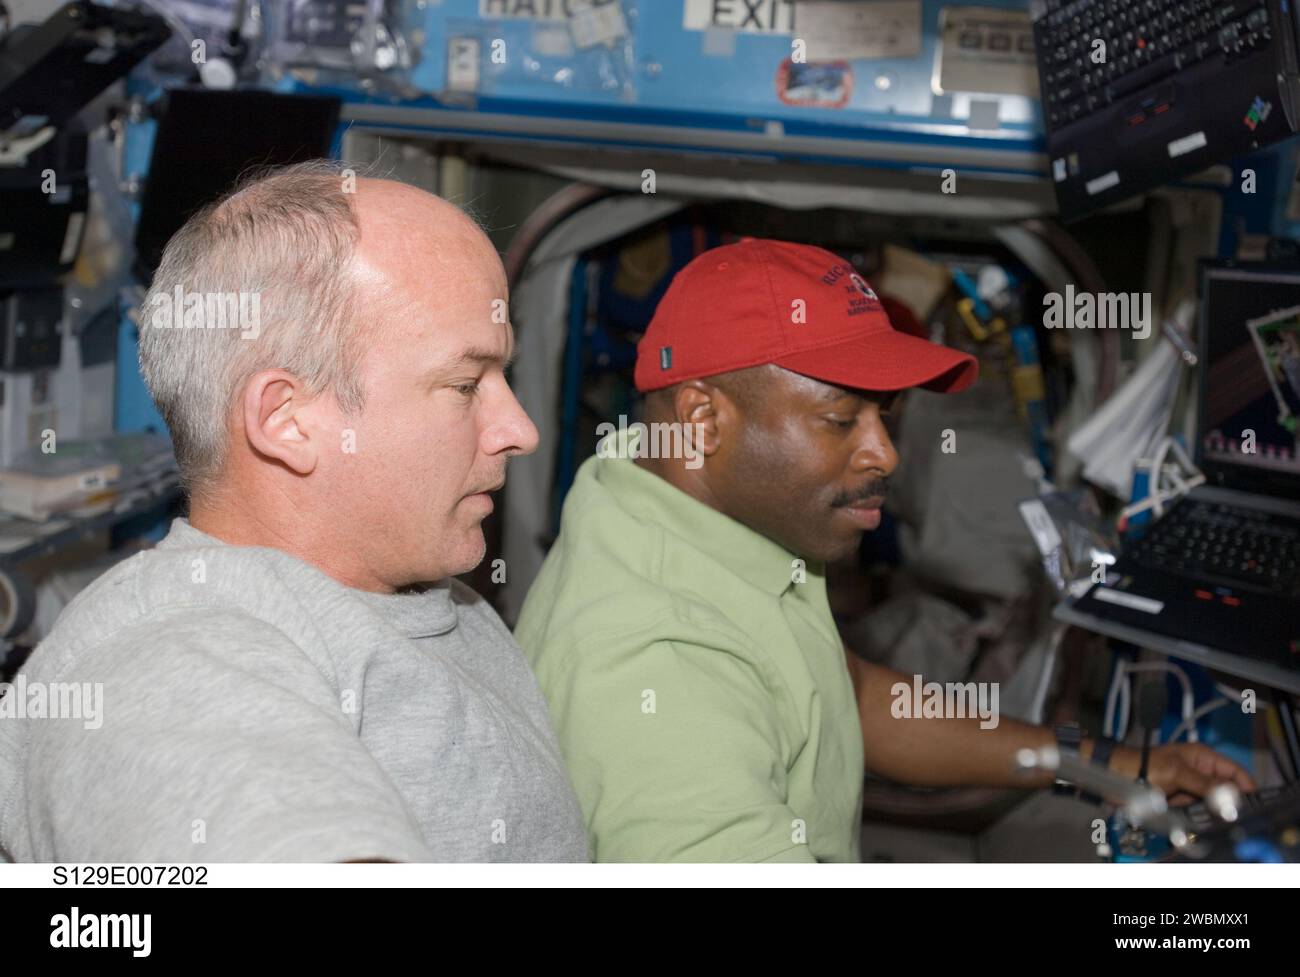 S129-E-007202 (21. November 2009) --- NASA-Astronauten Jeffrey Williams (links), Expedition 21 Flugingenieur und Leland Melvin, STS-129-Missionsspezialist, unterstützen die außerfahrzeugseitige Aktivität der Astronauten Mike Foreman und Randy Bresnik aus der Trikotärmelmiere der Internationalen Raumstation. Während Foreman und Bresnik draußen arbeiteten, arbeiteten zehn international vertretene Astronauten und Kosmonauten an Bord des Space Shuttle Atlantis und der Internationalen Raumstation, um ihre Aufgaben zu unterstützen. Stockfoto